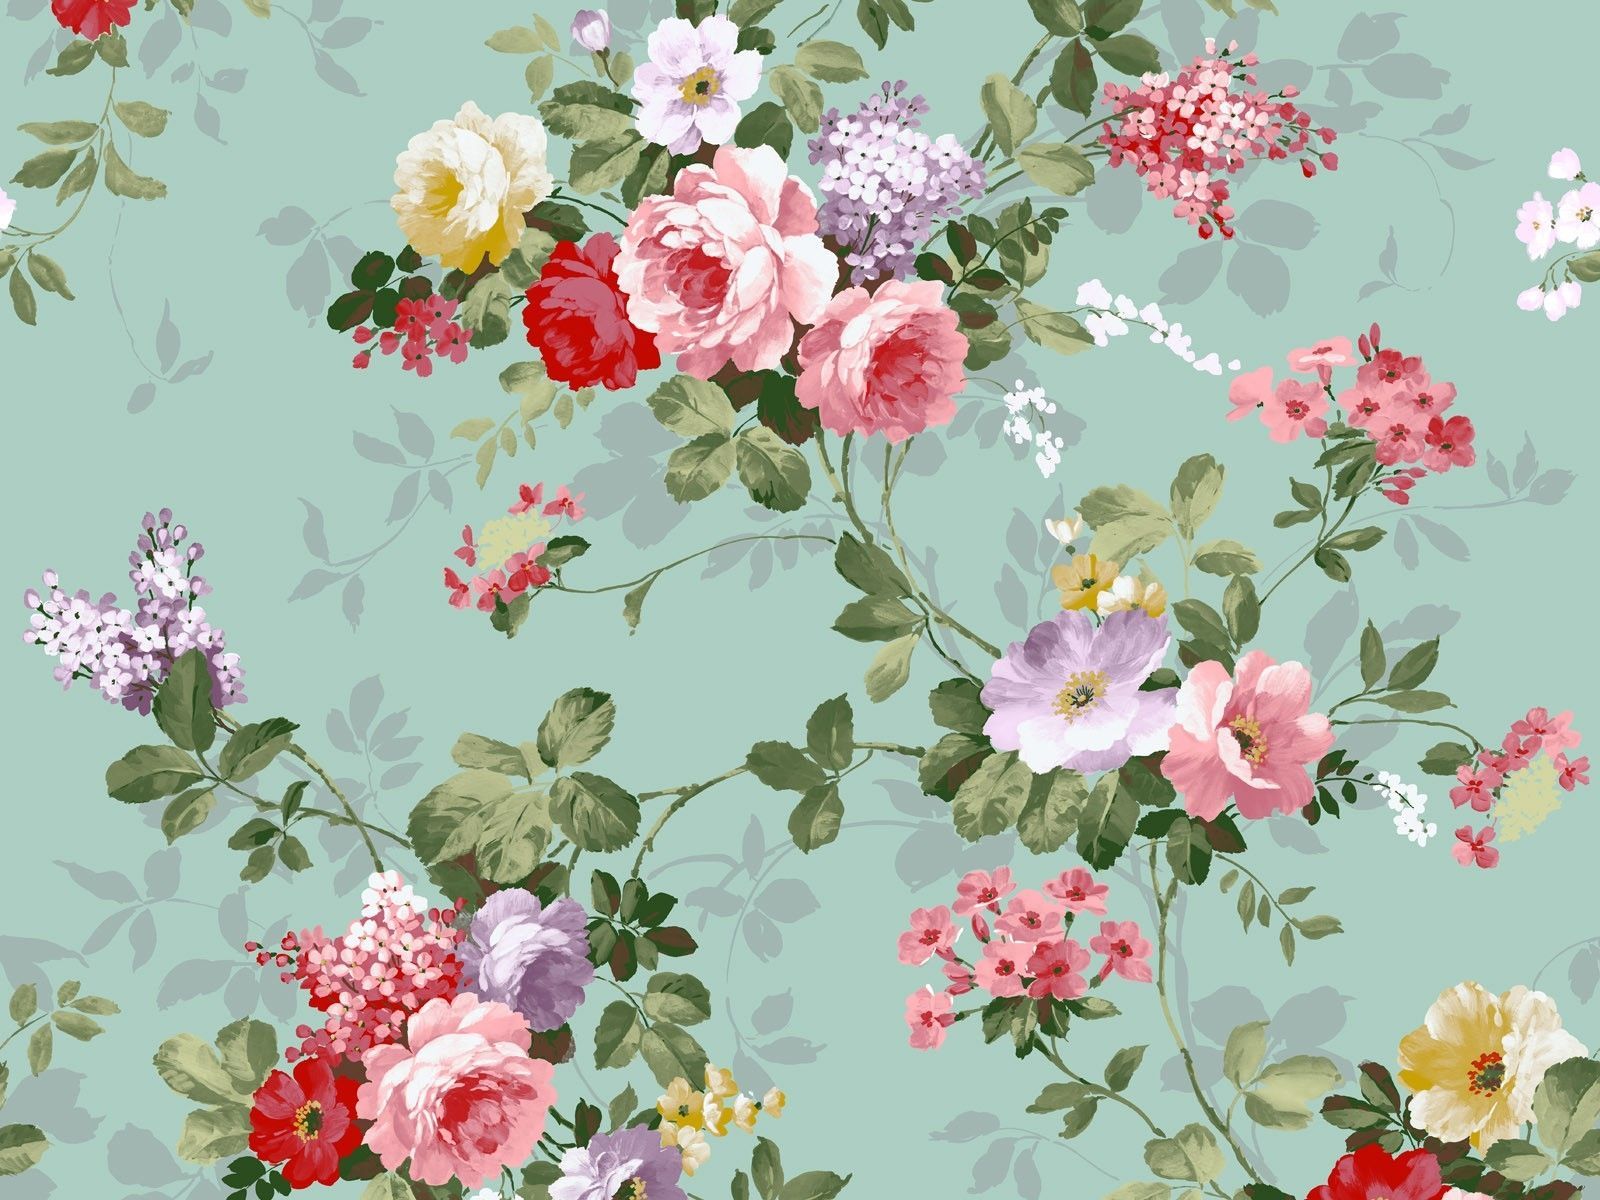 Indie Floral Wallpaper Free Indie Floral Background